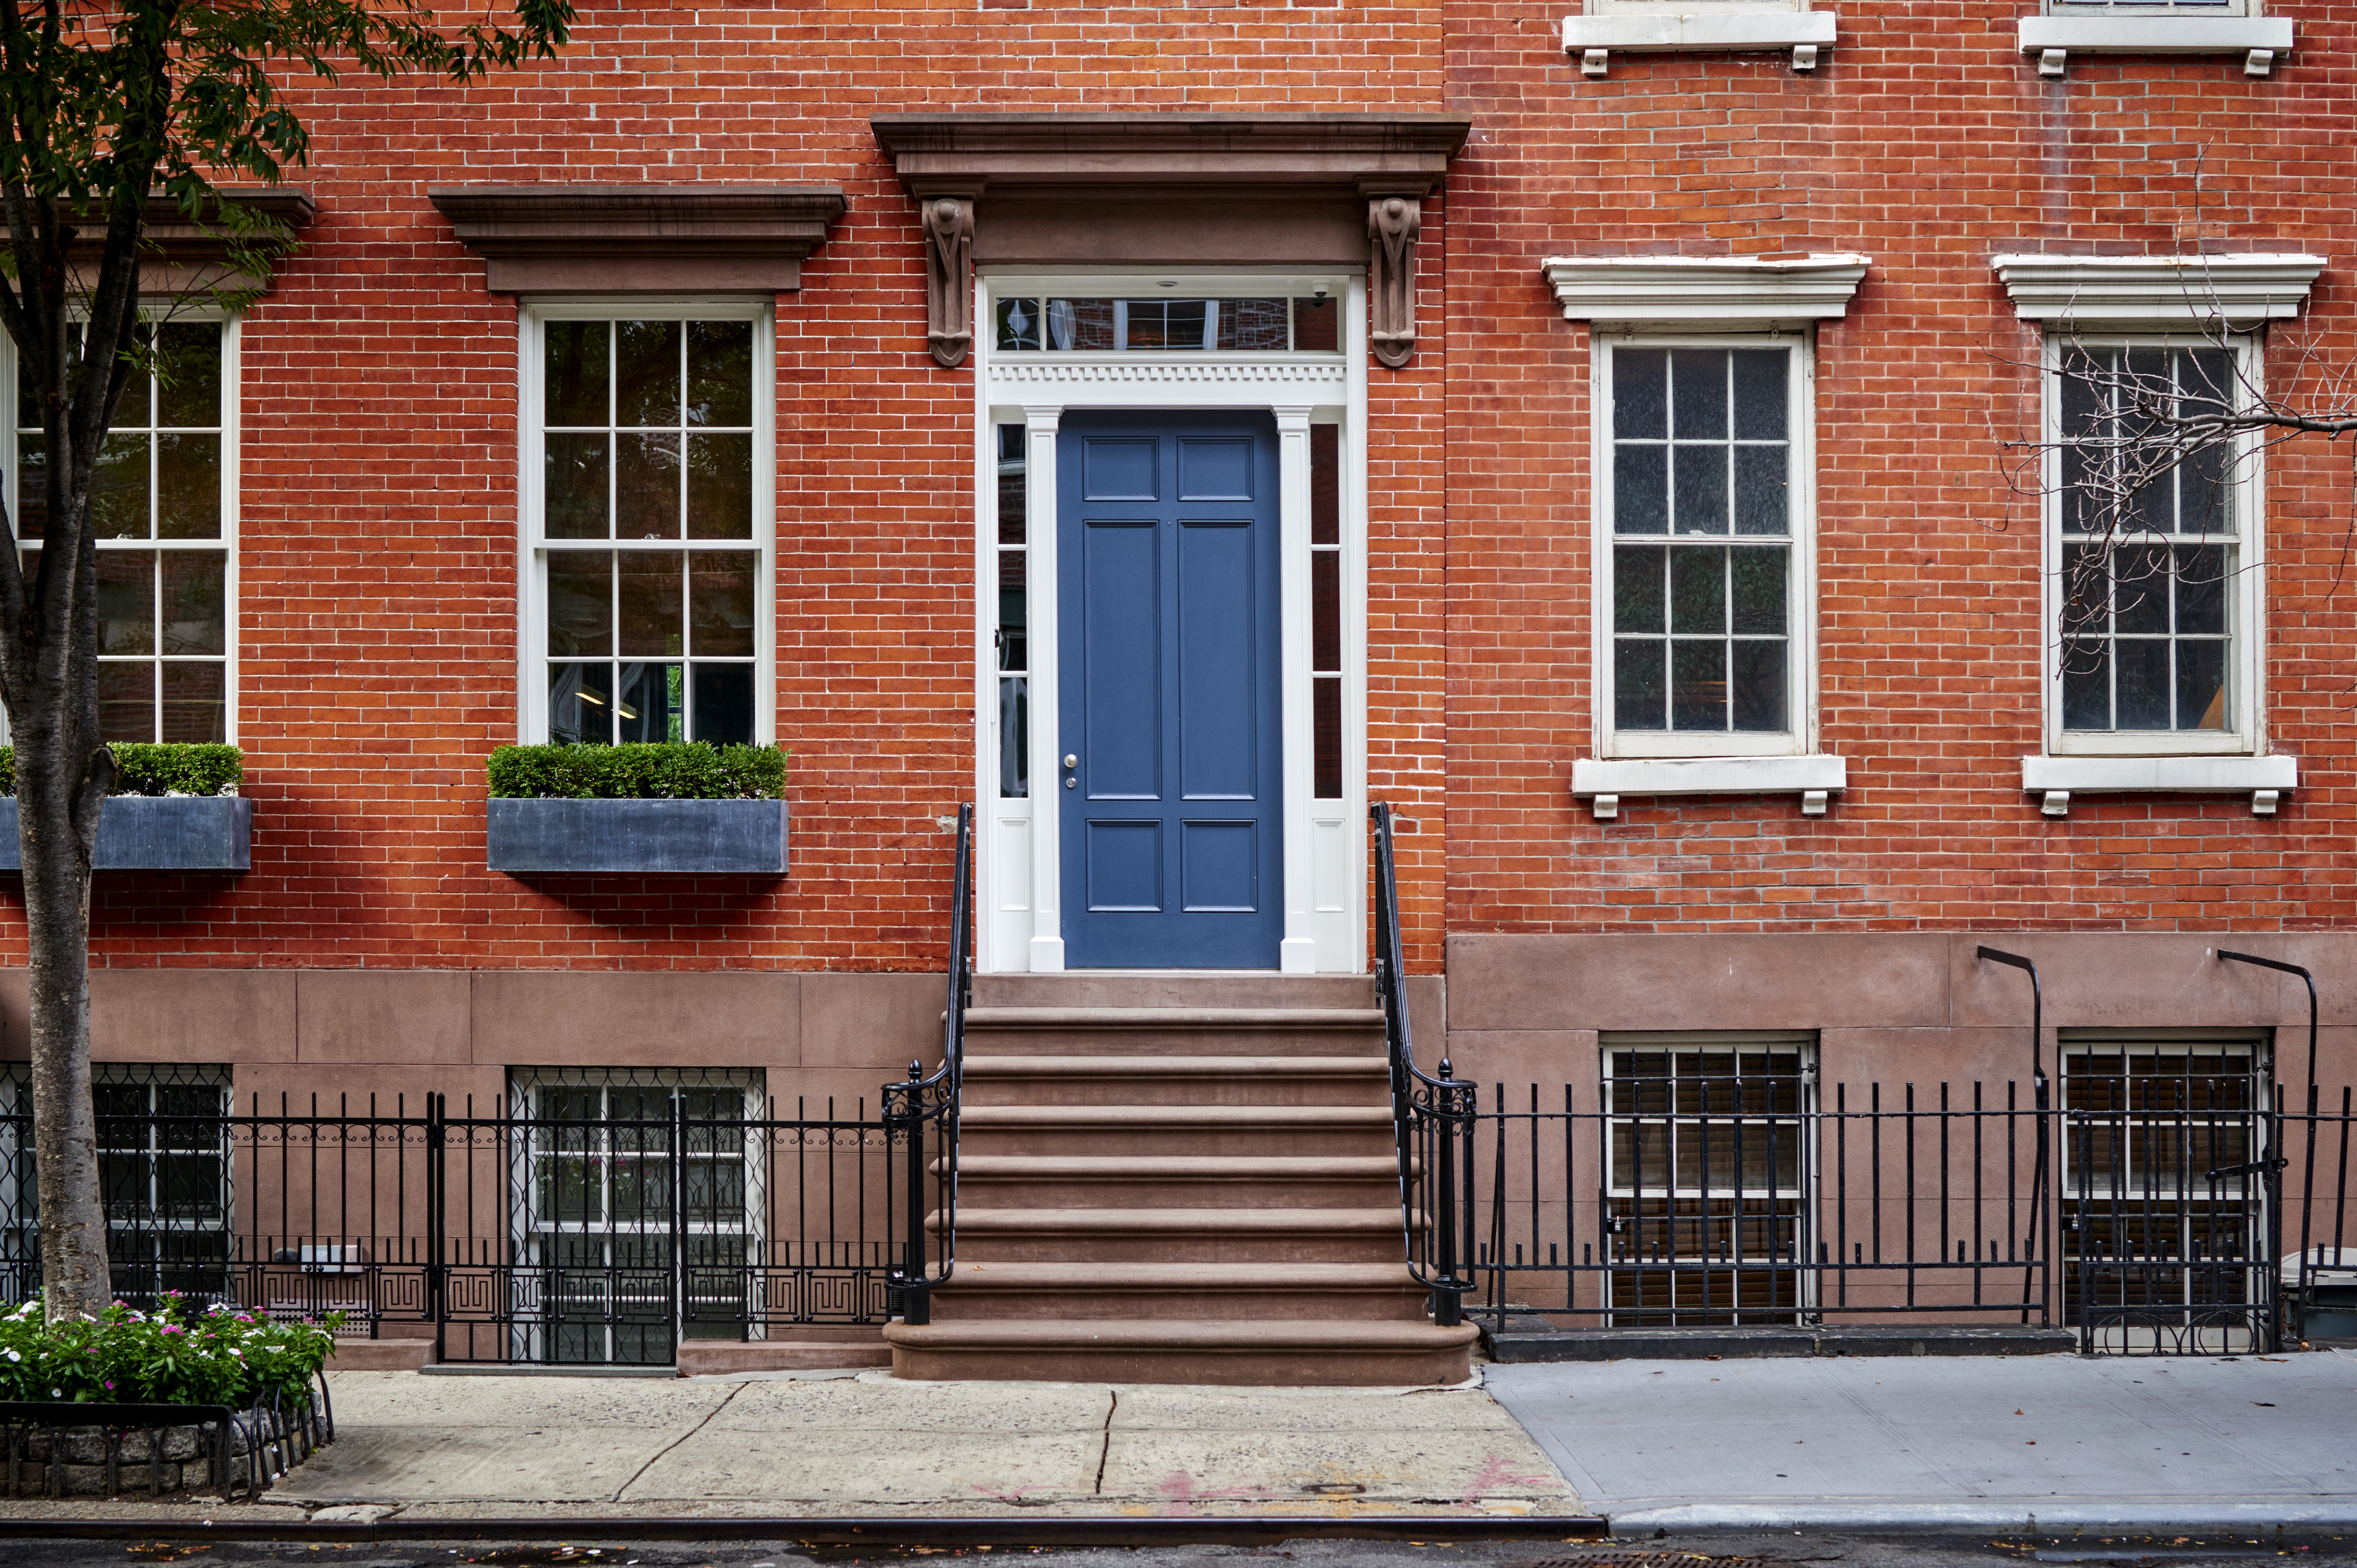 La transaction immobilière de cette résidence luxueuse avec sa façade de briques se fera-t-elle en cryptomonnaie d'ici cinq ans ? © goodmanphoto, Adobe Stock